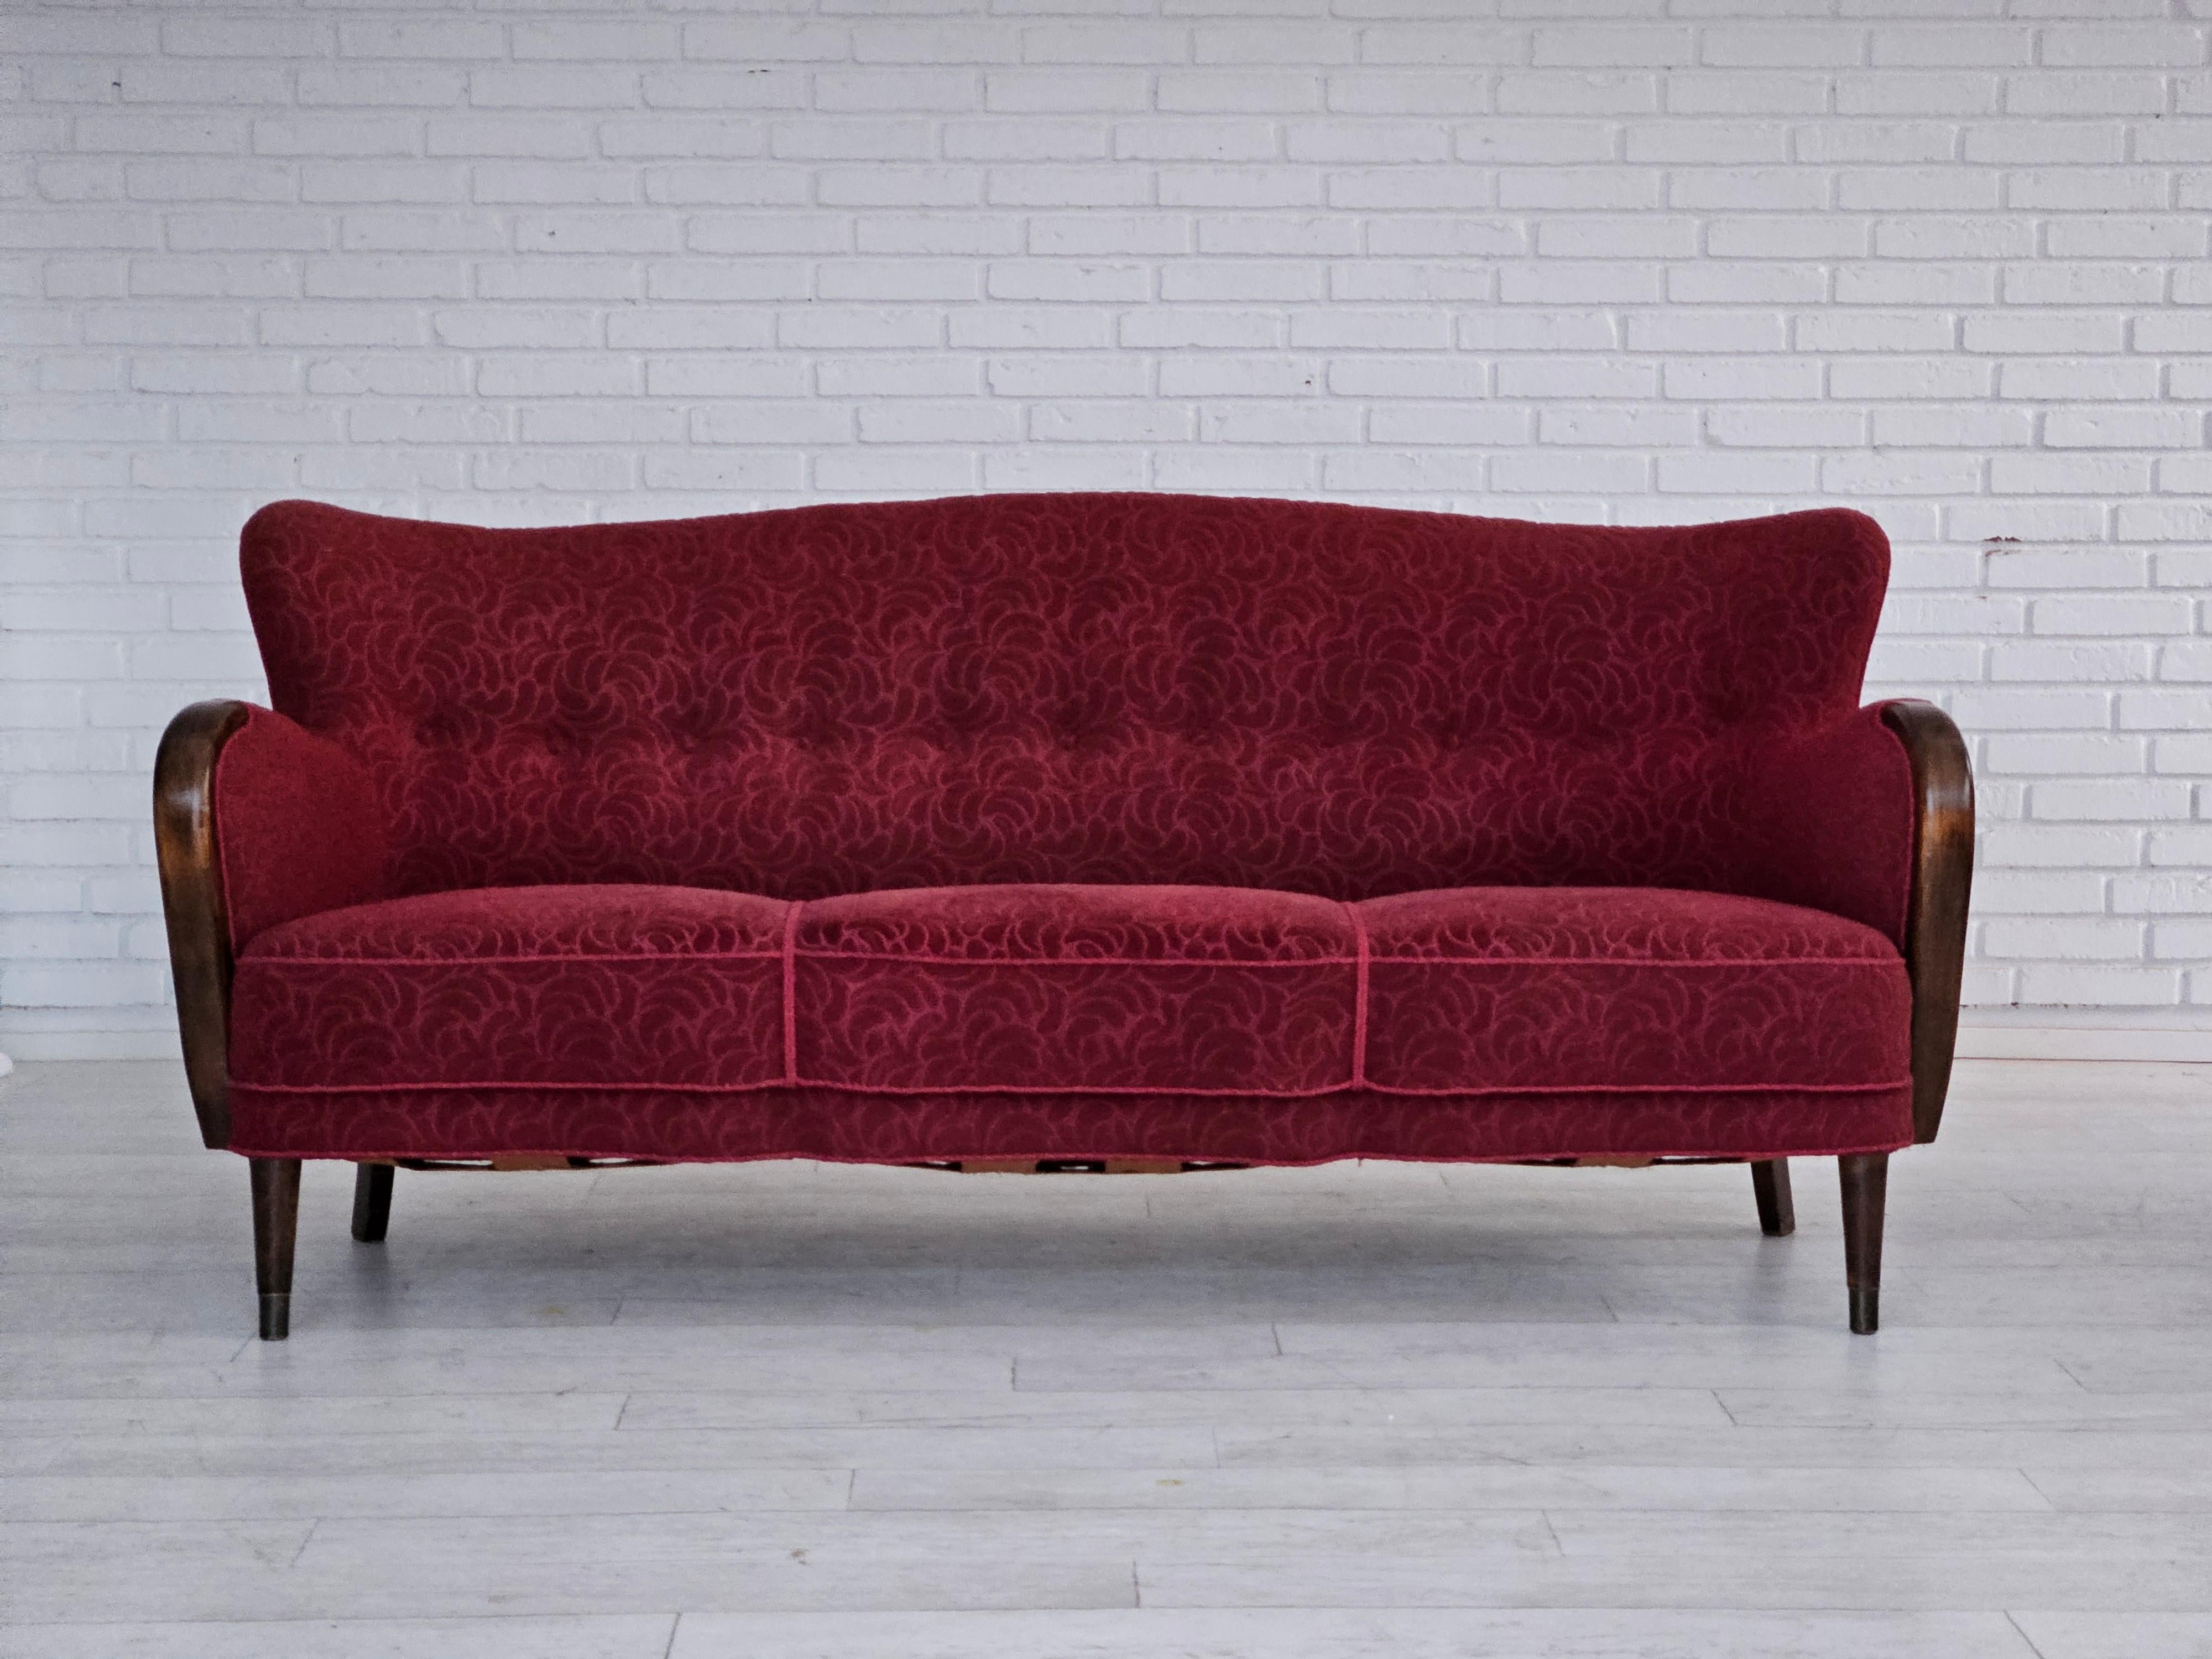 Dänisches 3-Sitzer-Sofa aus den 1960er Jahren in sehr gutem Originalzustand: keine Gerüche und keine Flecken. Originaler roter Baumwoll-Woll-Möbelstoff, Buchenholzbeine mit Messingdübeln, Messingfedern in der Sitzfläche. Hergestellt von einem